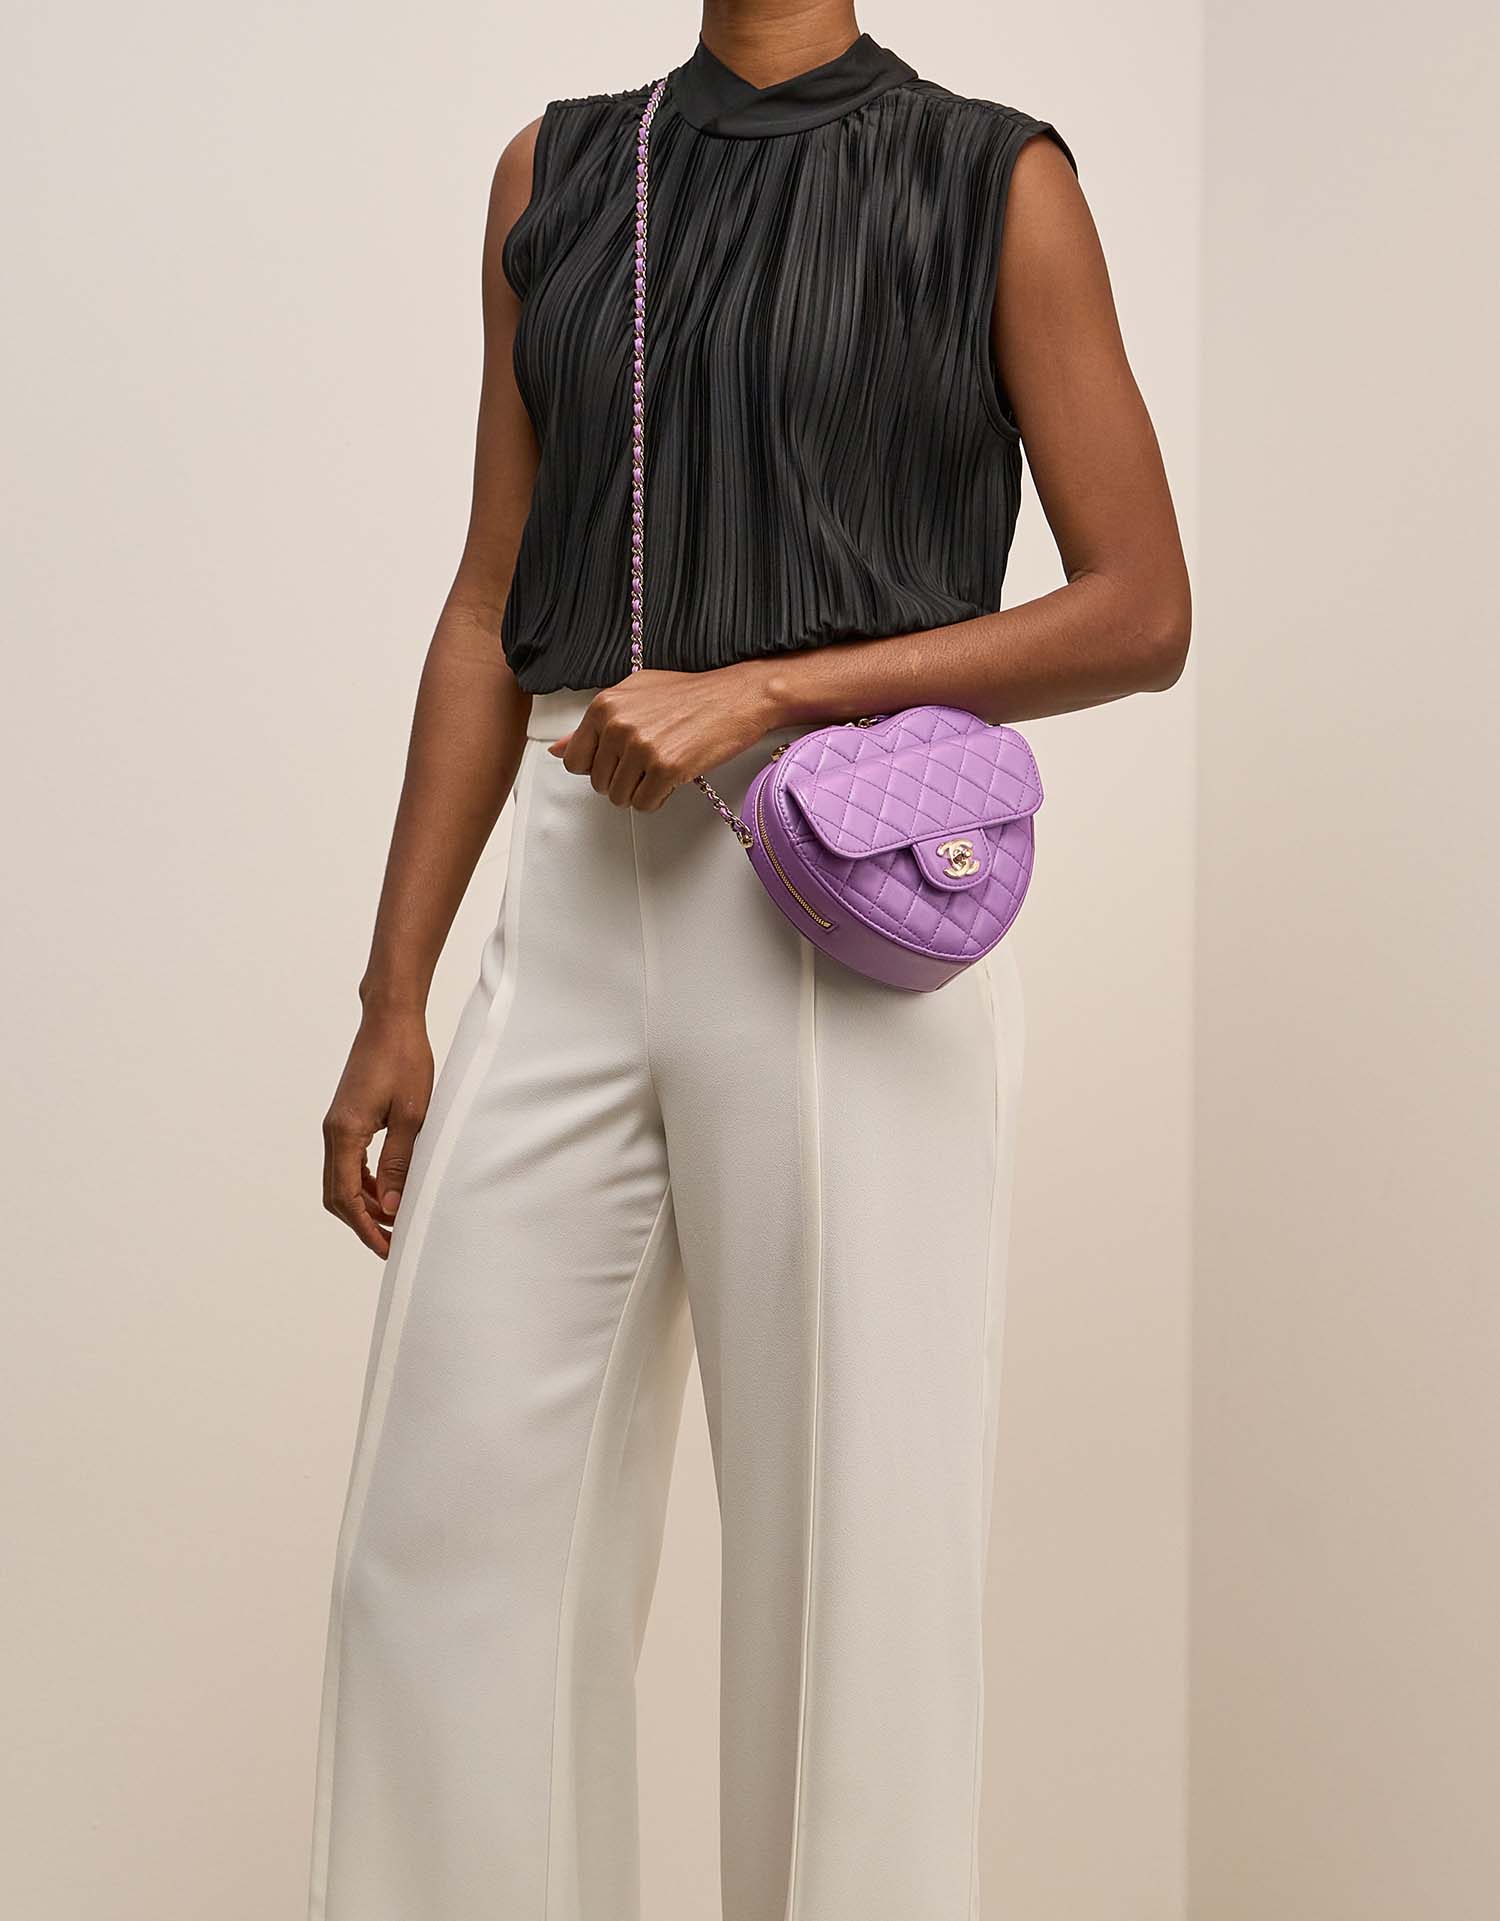 Chanel TimelessHeart Medium Violet sur Modèle | Vendez votre sac de créateur sur Saclab.com